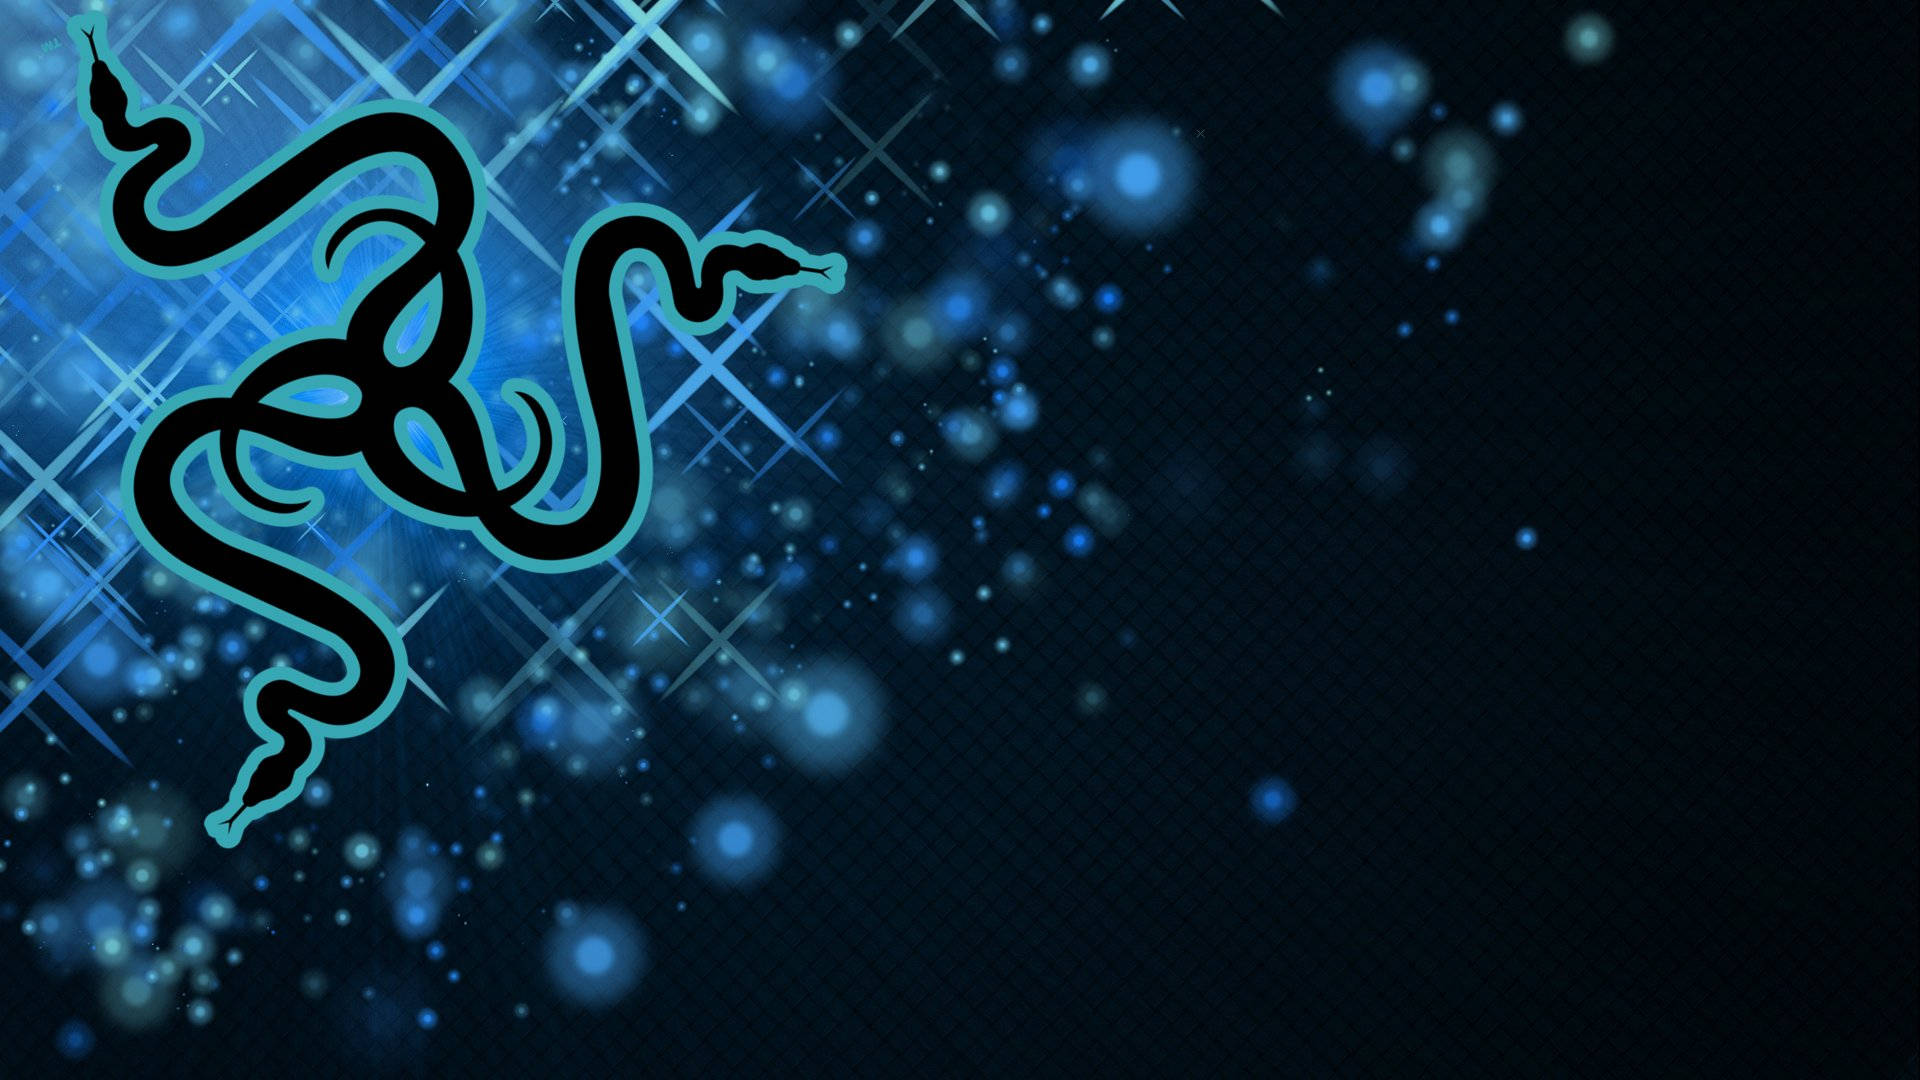 Razer Pc Logo With Blue Sparkles Wallpaper